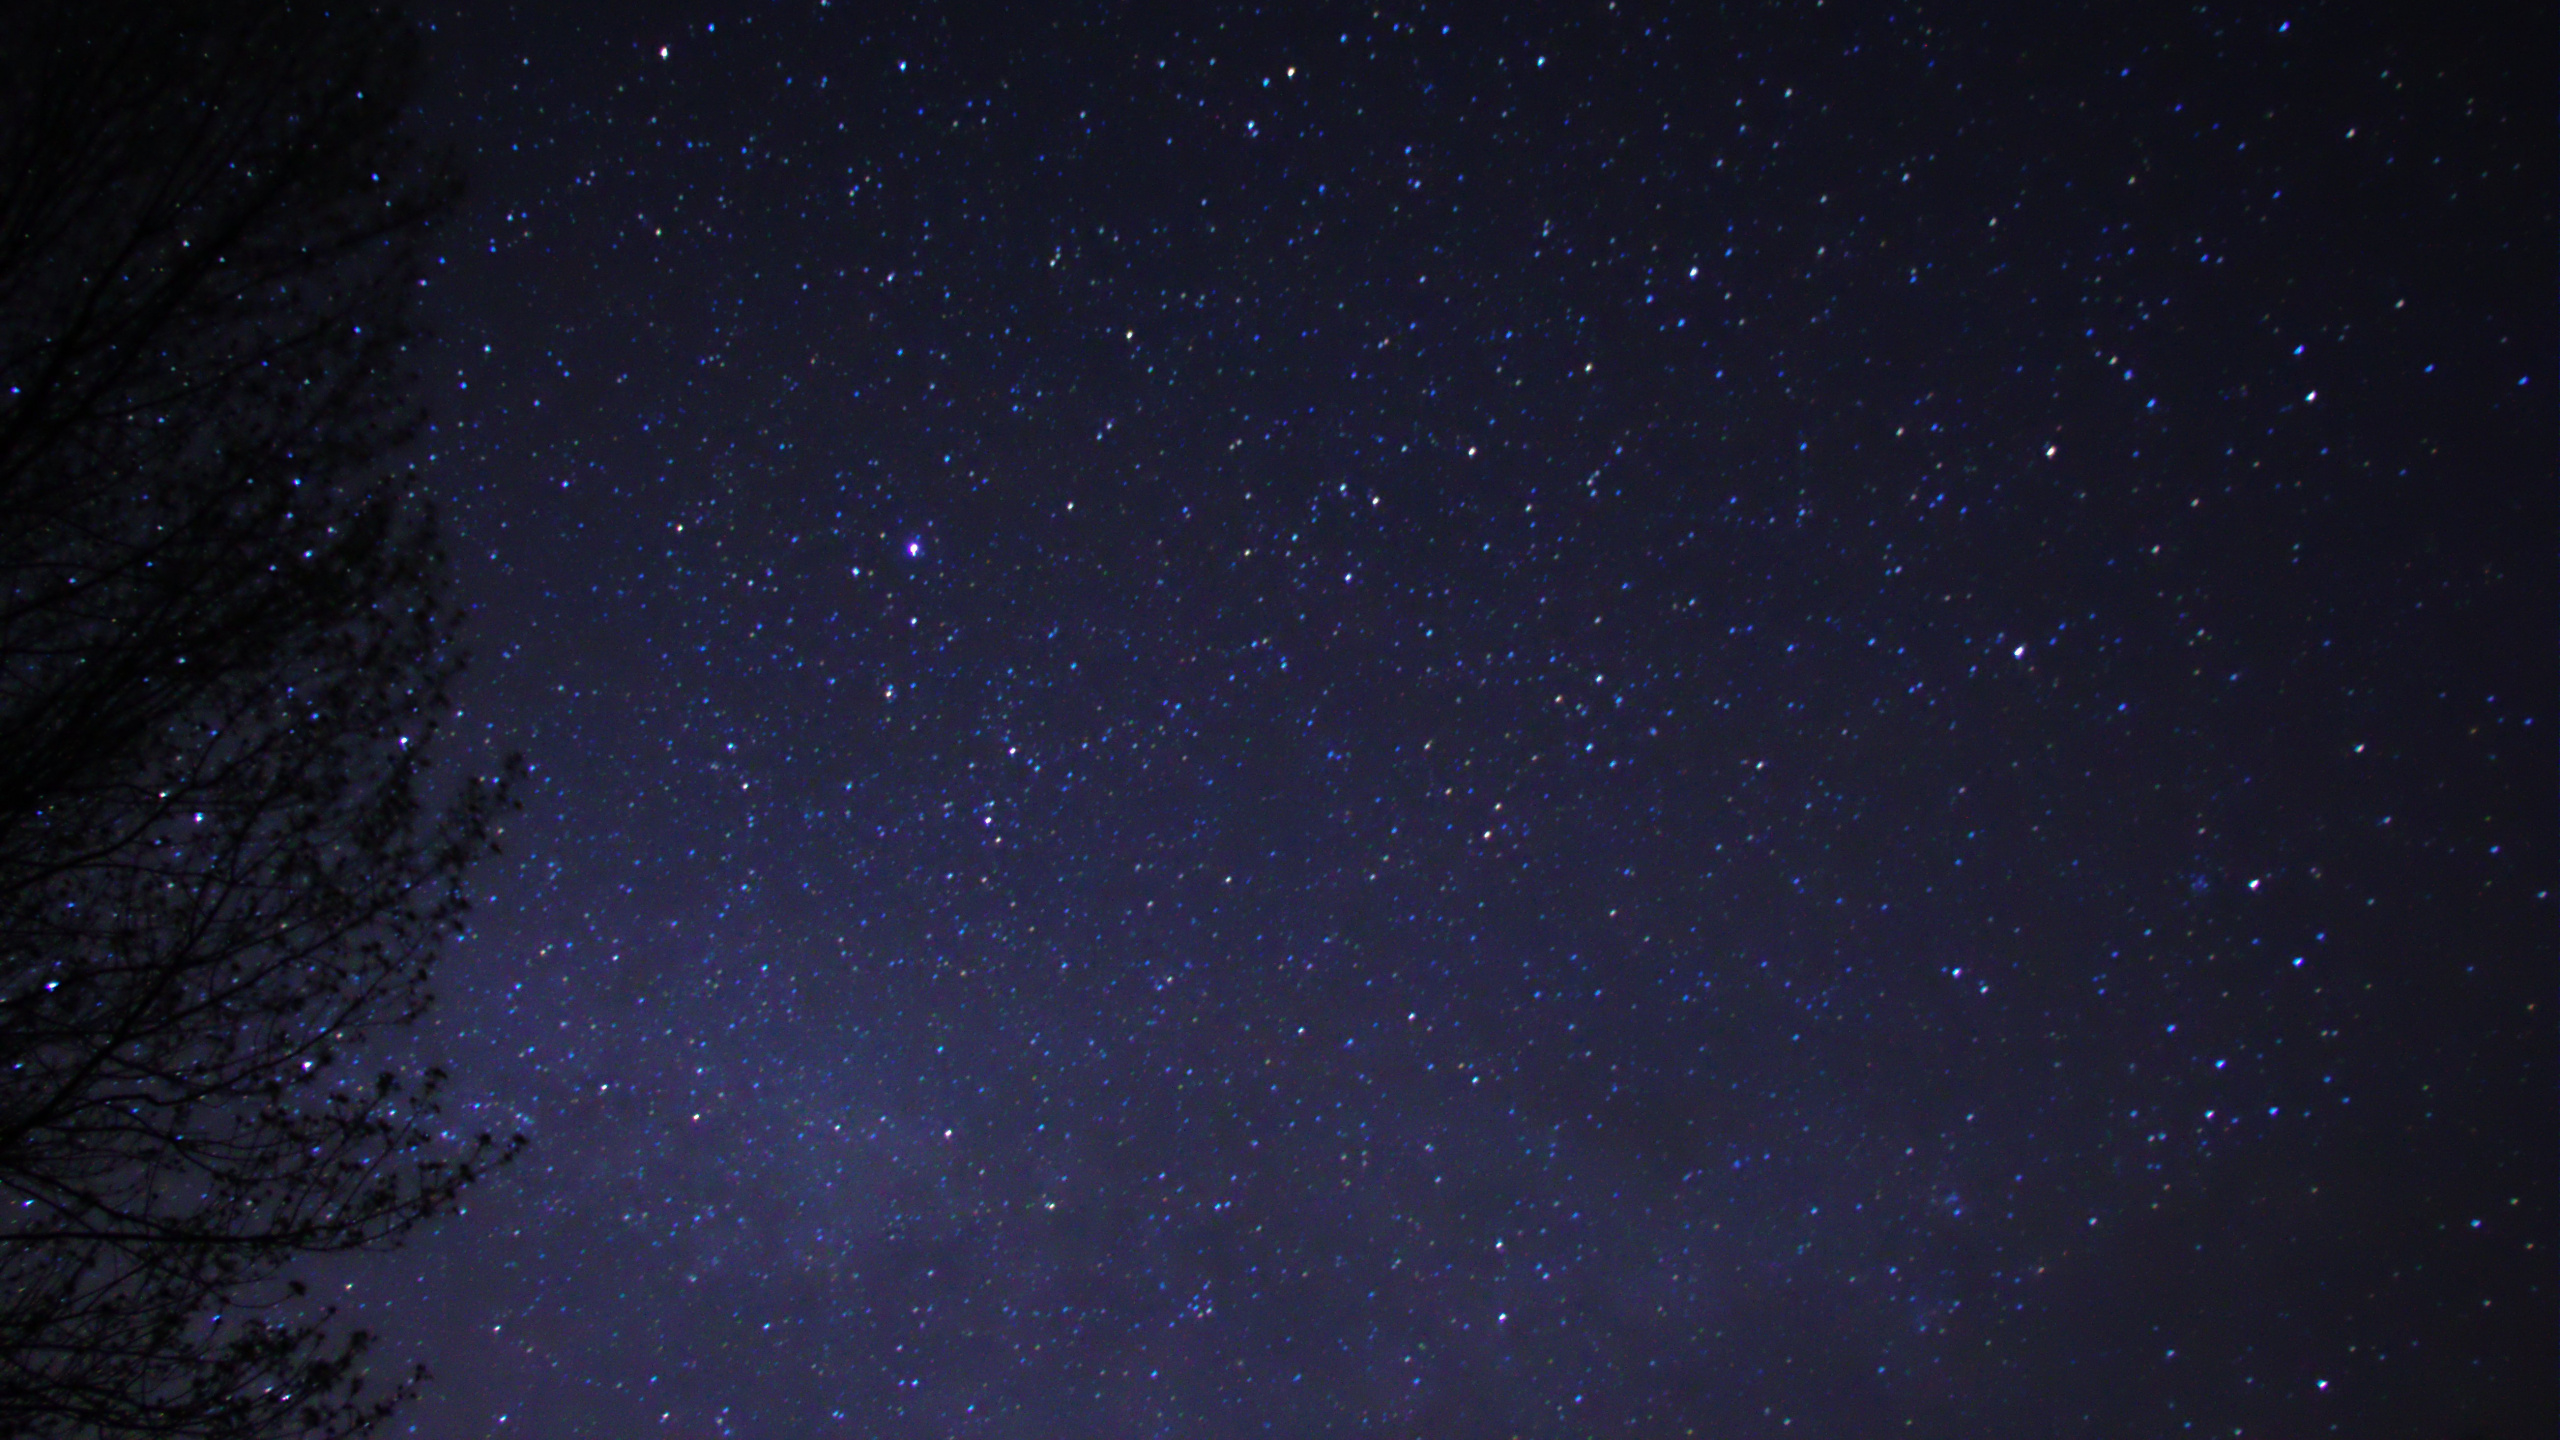 Cielo Estrellado Sobre la Noche Estrellada. Wallpaper in 2560x1440 Resolution